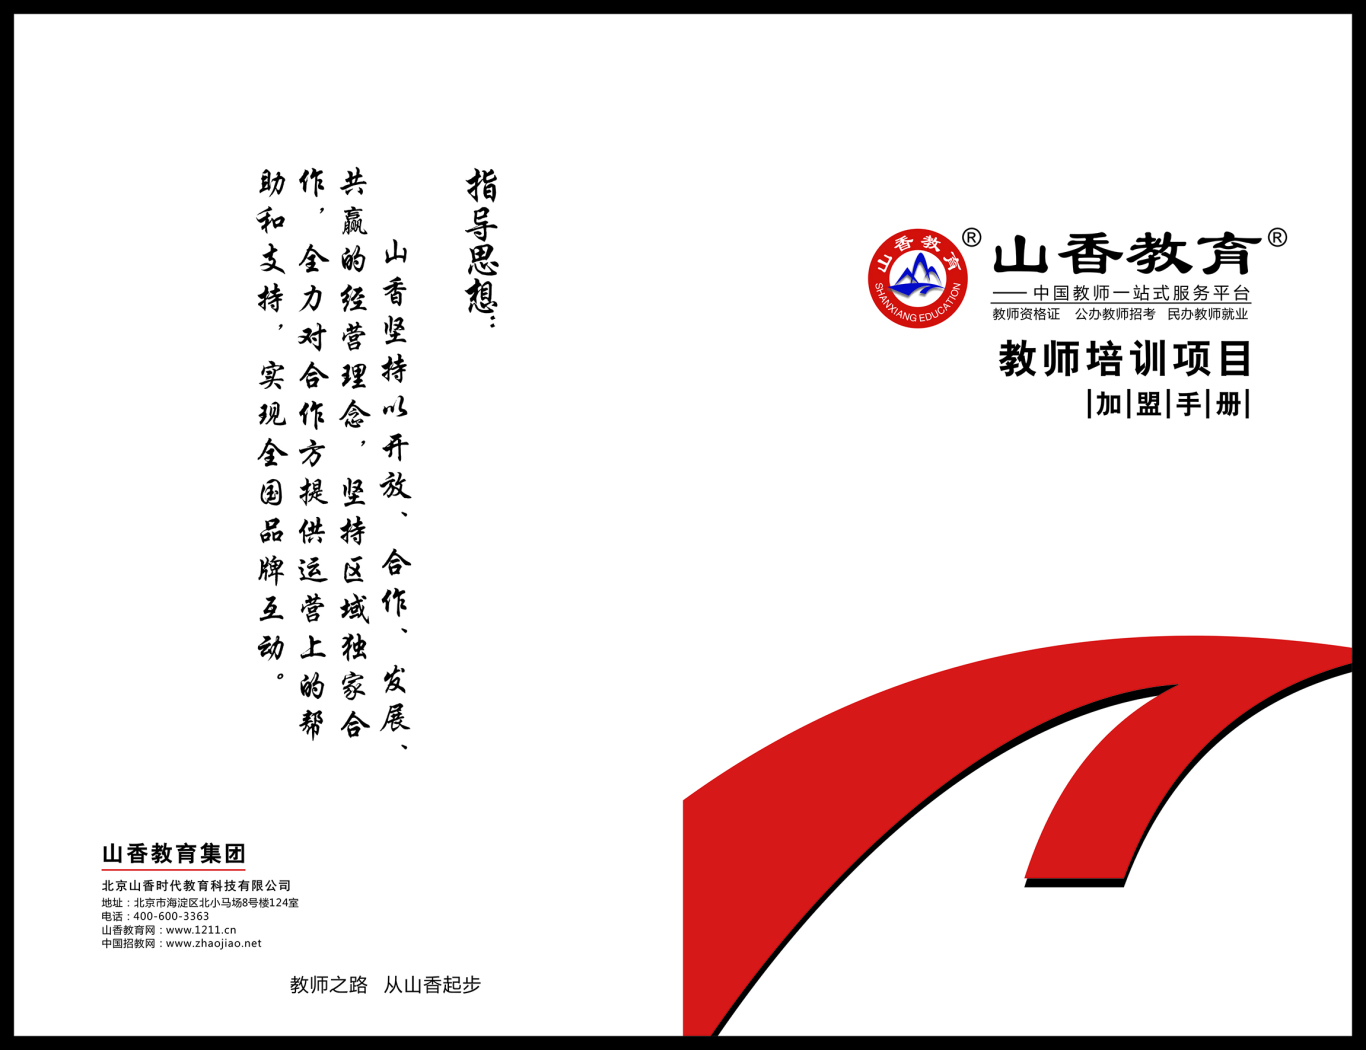 山香教育教师培训项目加盟手册图0